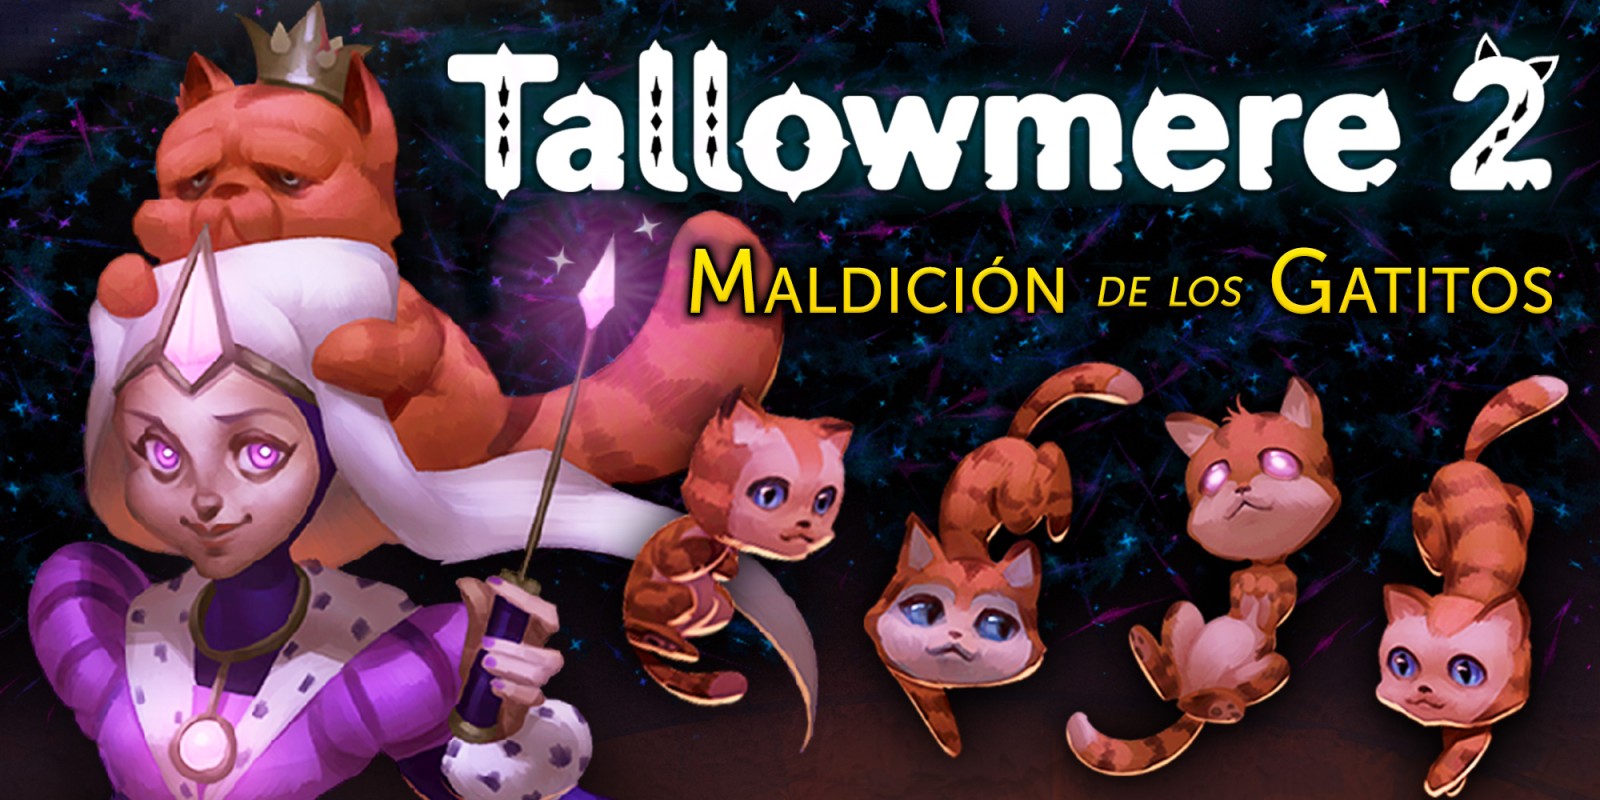 Tallowmere 2: Maldición de los Gatitos